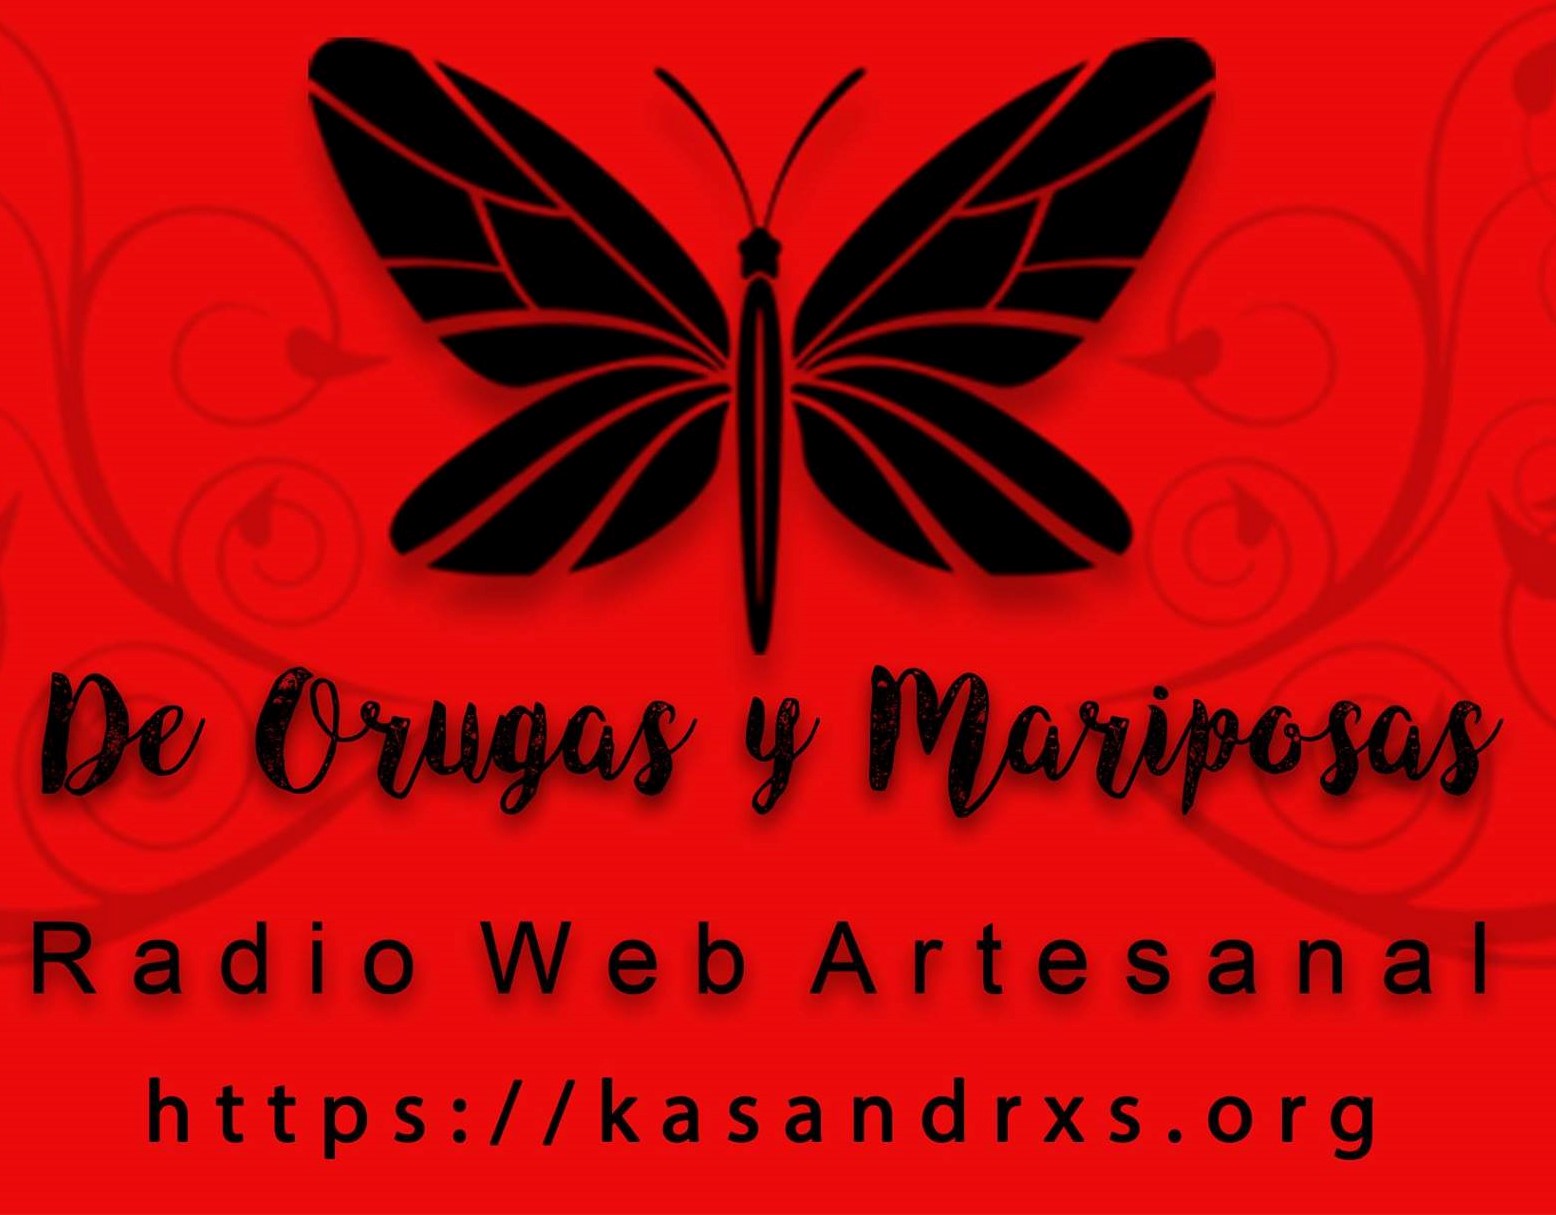 Radio de Orugas y Mariposas